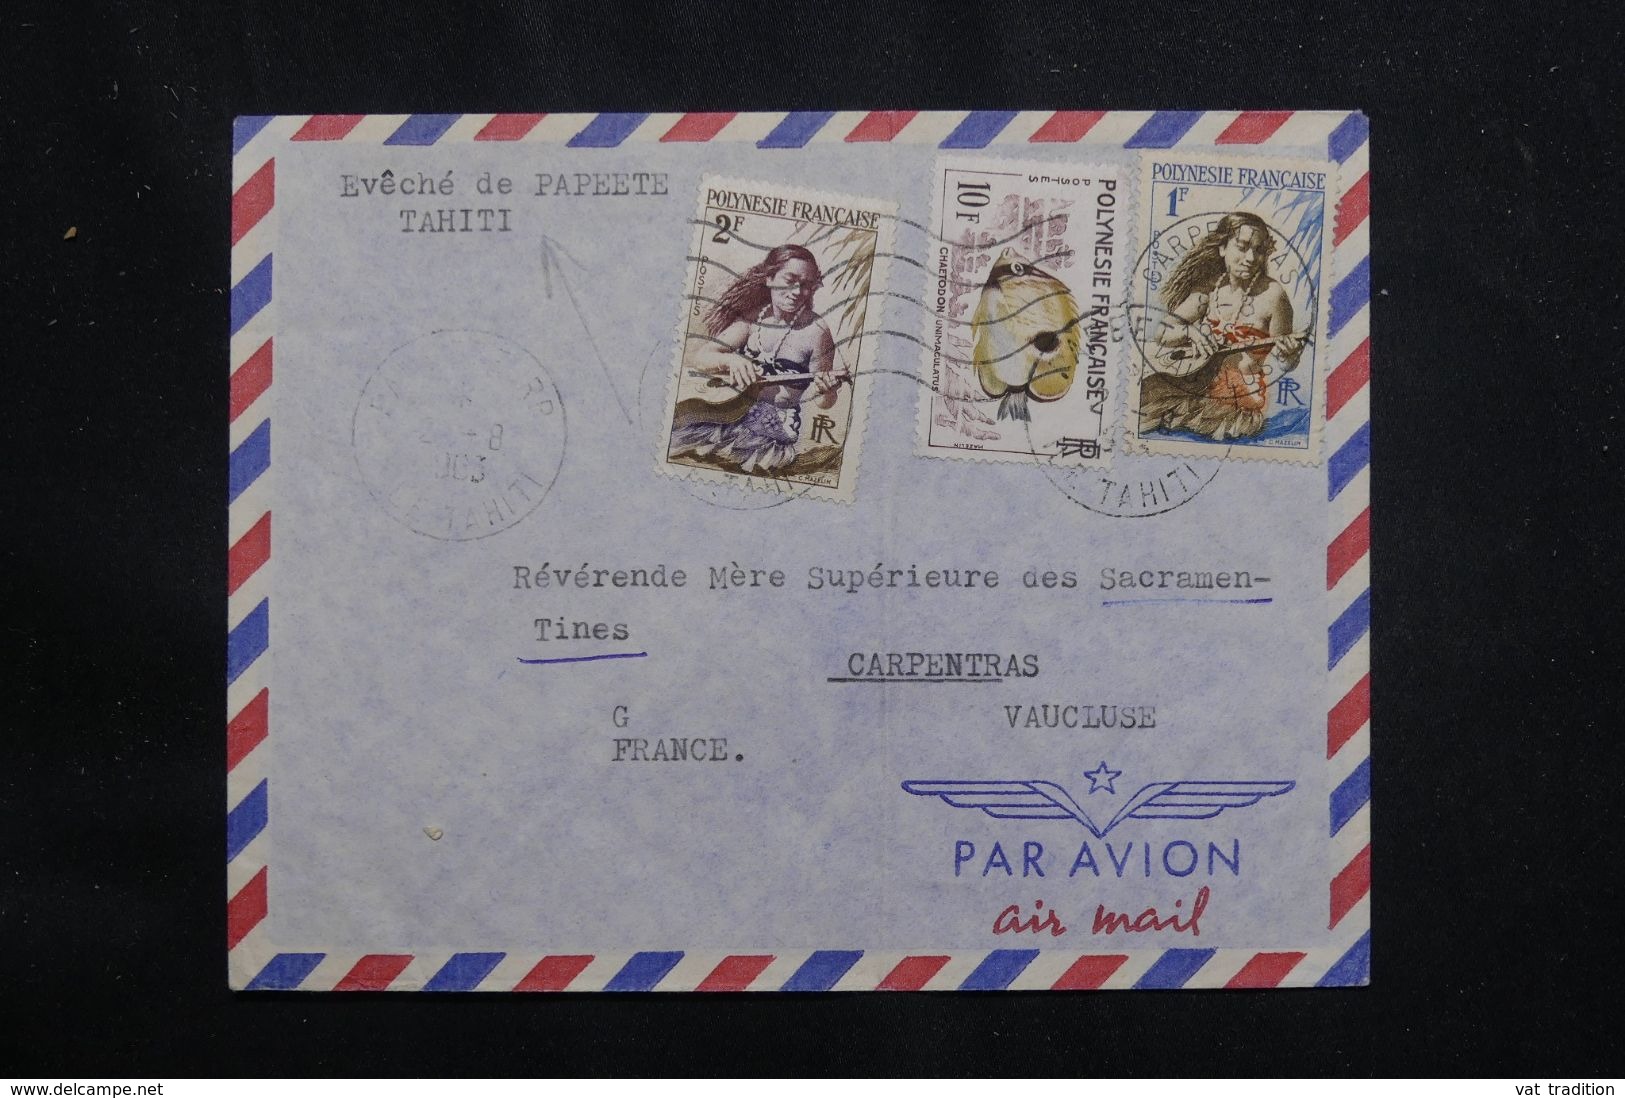 POLYNÉSIE - Enveloppe De L’évêché De Papeete En 1963 Pour La France - L 65935 - Covers & Documents